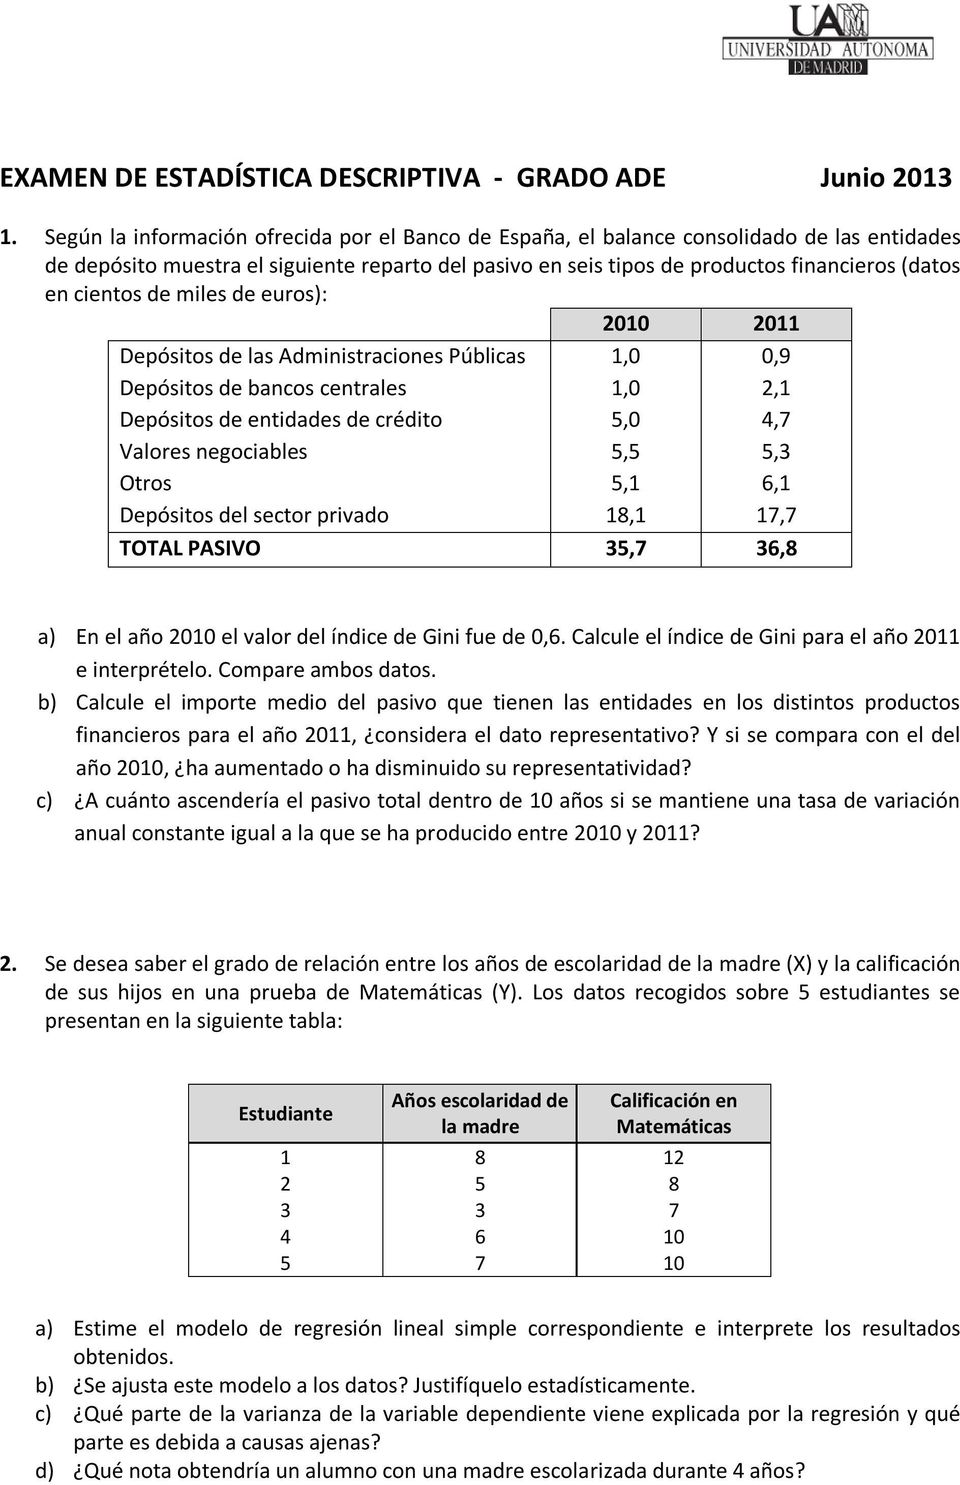 cientos de miles de euros): 2010 2011 Depósitos de las Administraciones Públicas 1,0 0,9 Depósitos de bancos centrales 1,0 2,1 Depósitos de entidades de crédito 5,0 4,7 Valores negociables 5,5 5,3